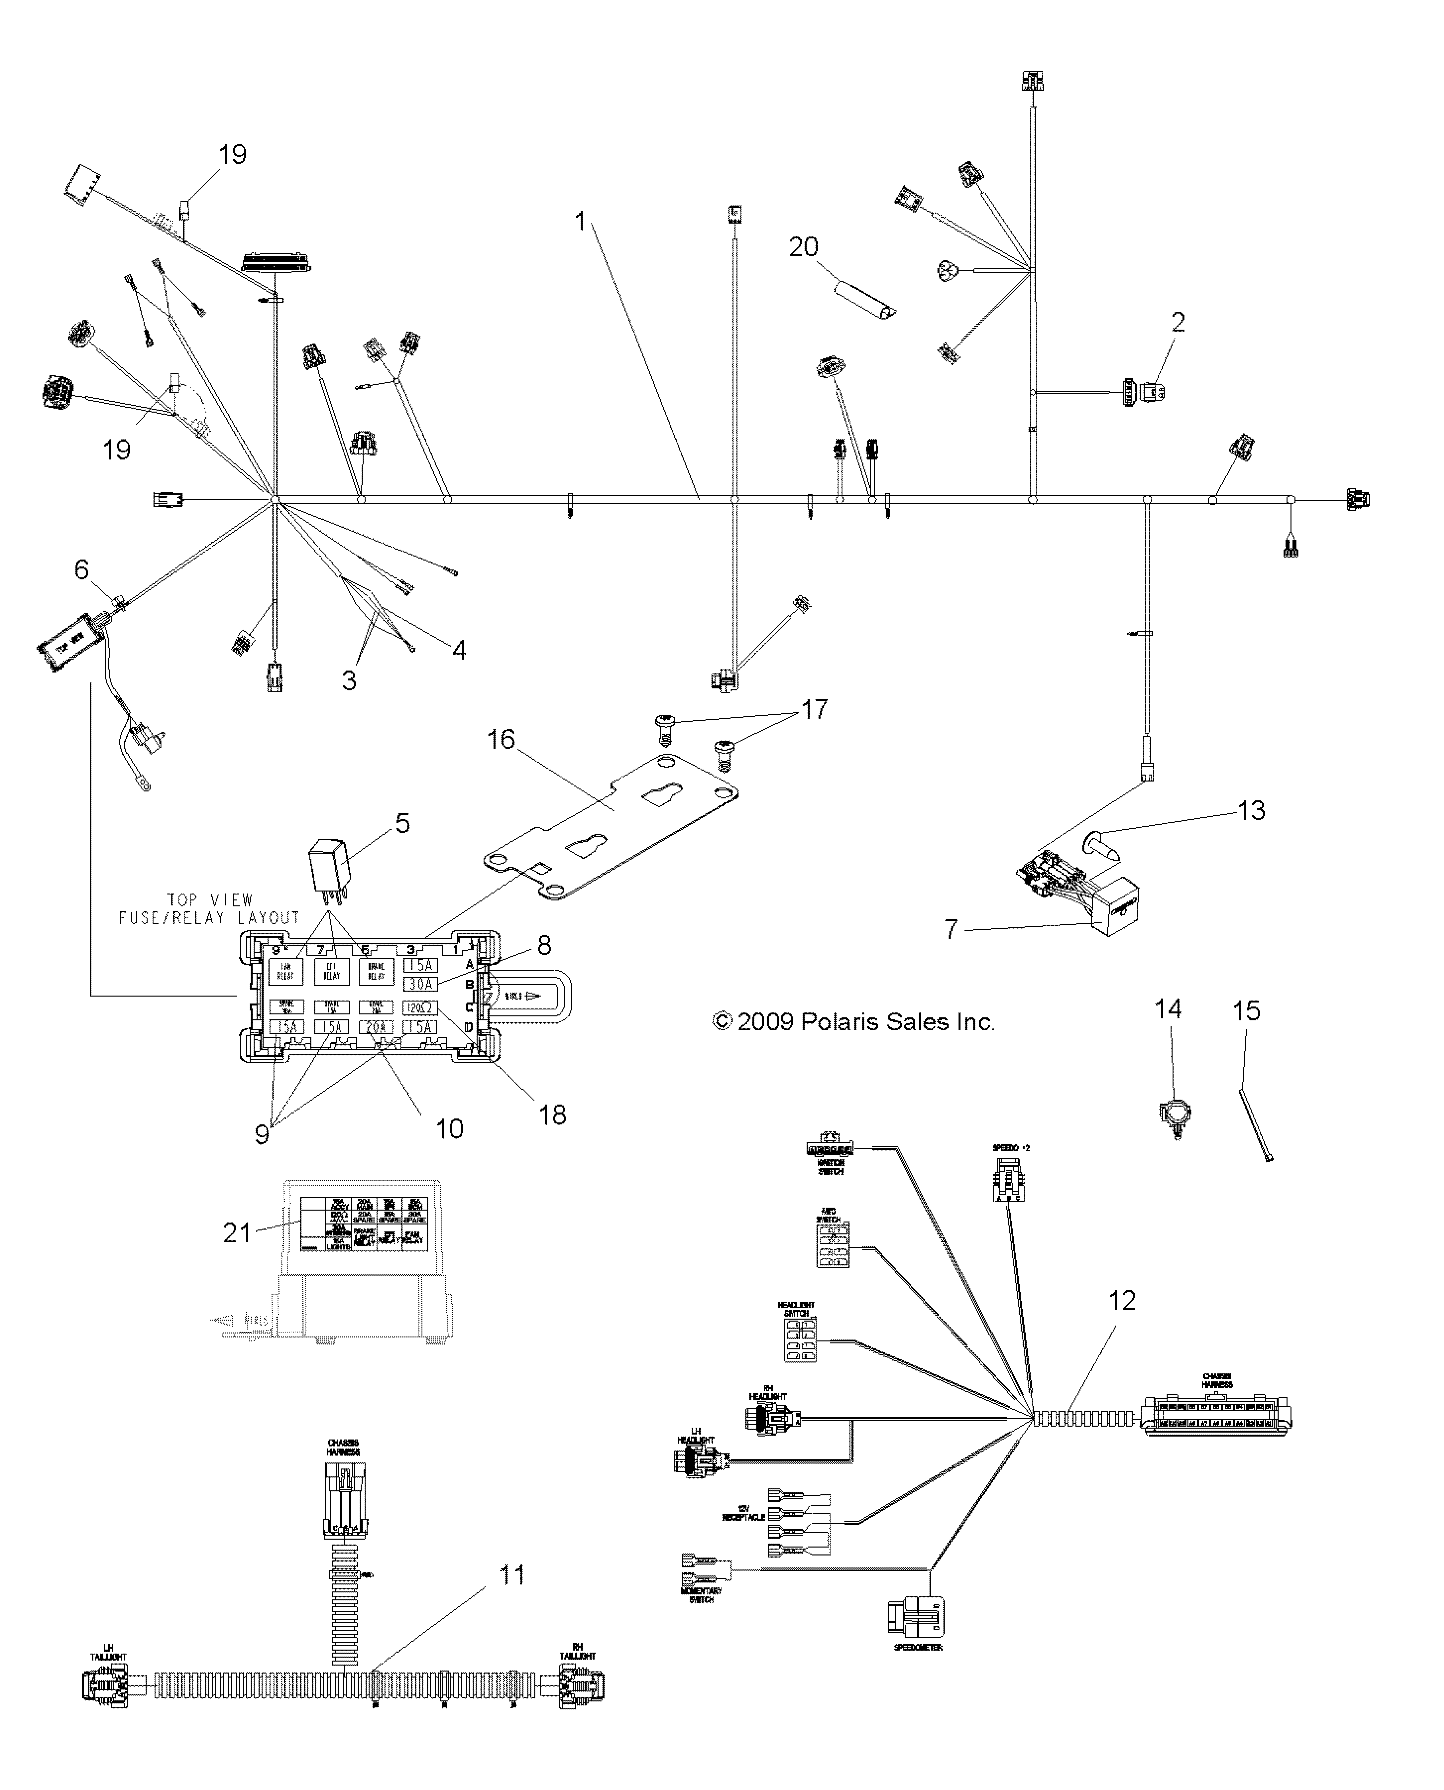 Foto diagrama Polaris que contem a peça 5251956